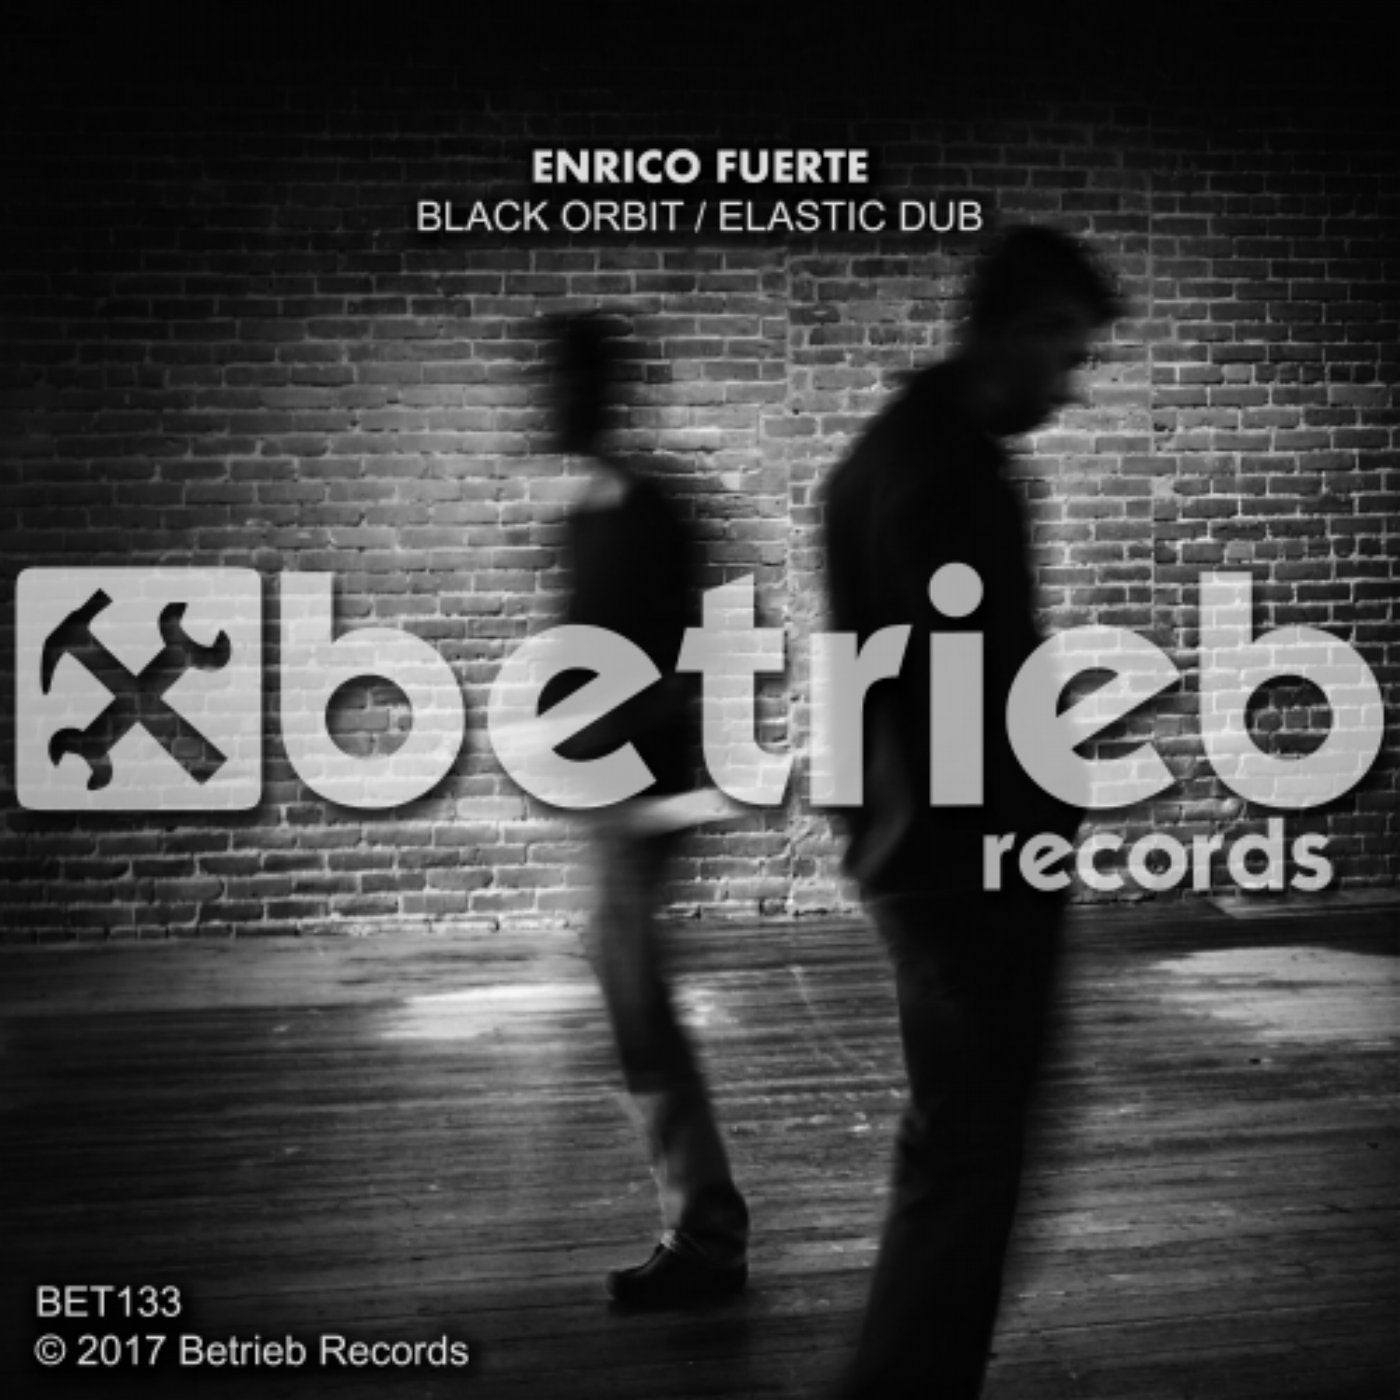 Black Orbit / Elastic Dub